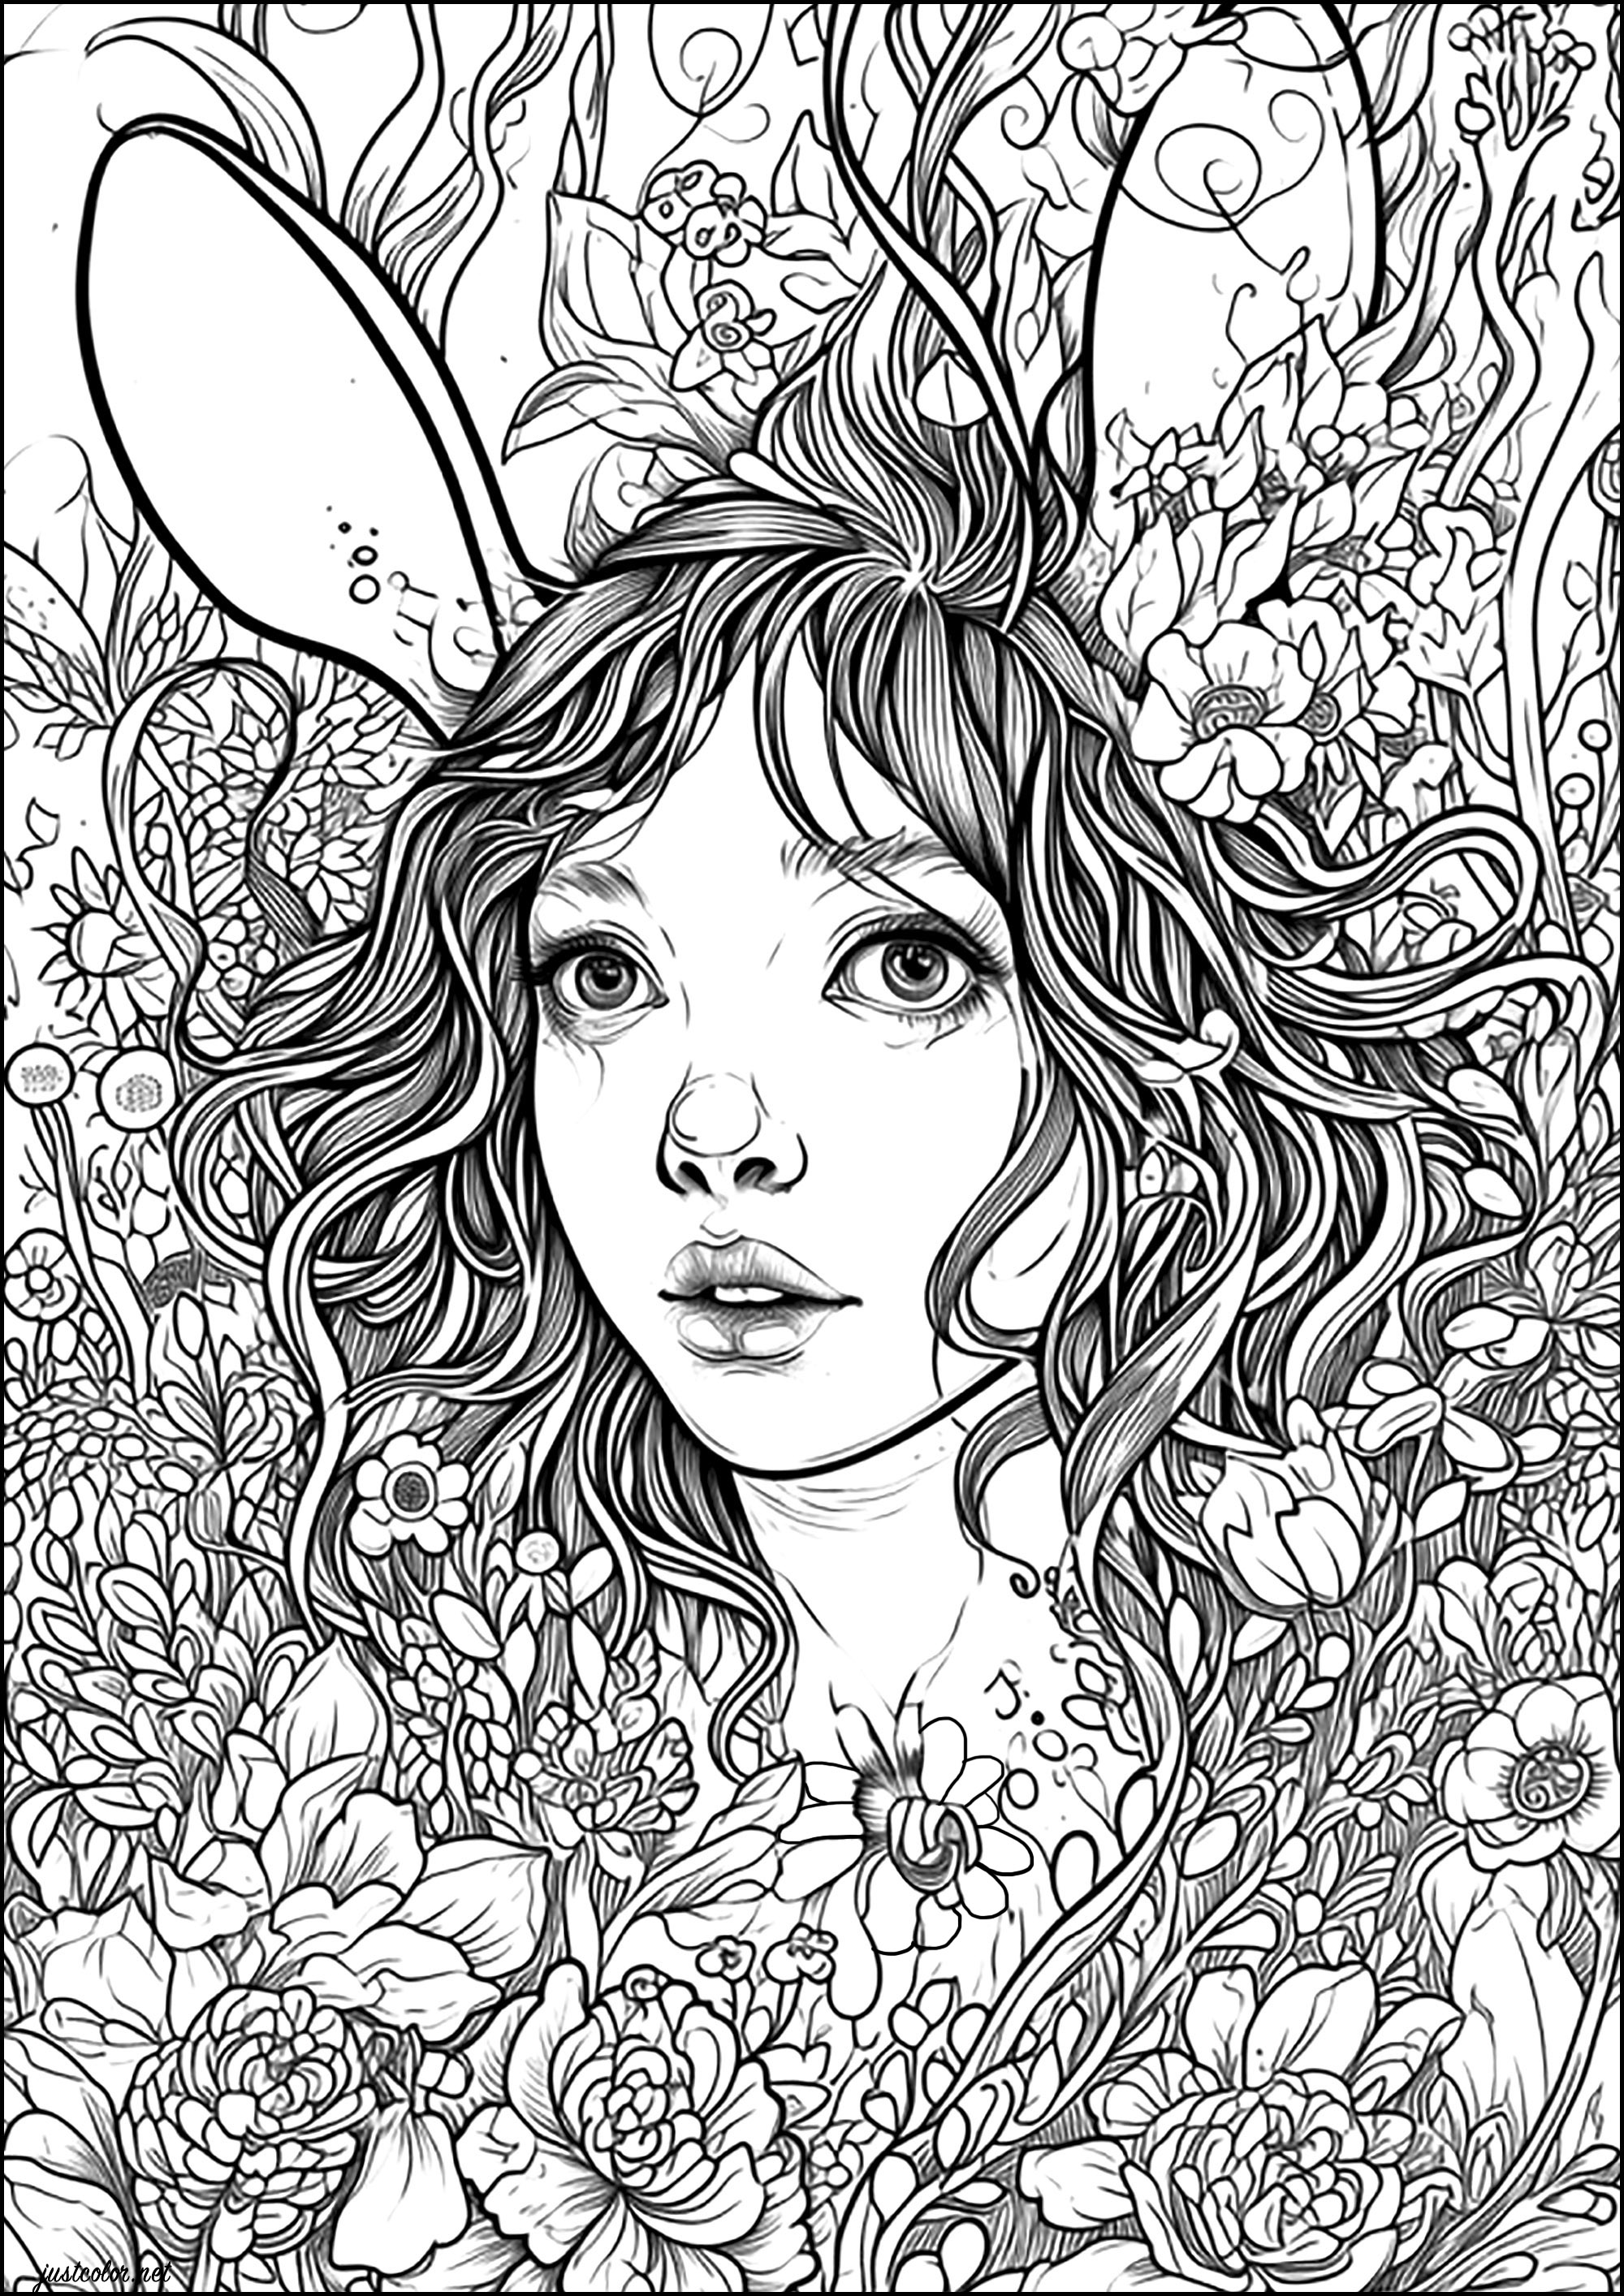 La mujer conejo. Un hechizo convierte a esta joven en un conejo... Se esconde entre las flores, esperando que alguien la salve.